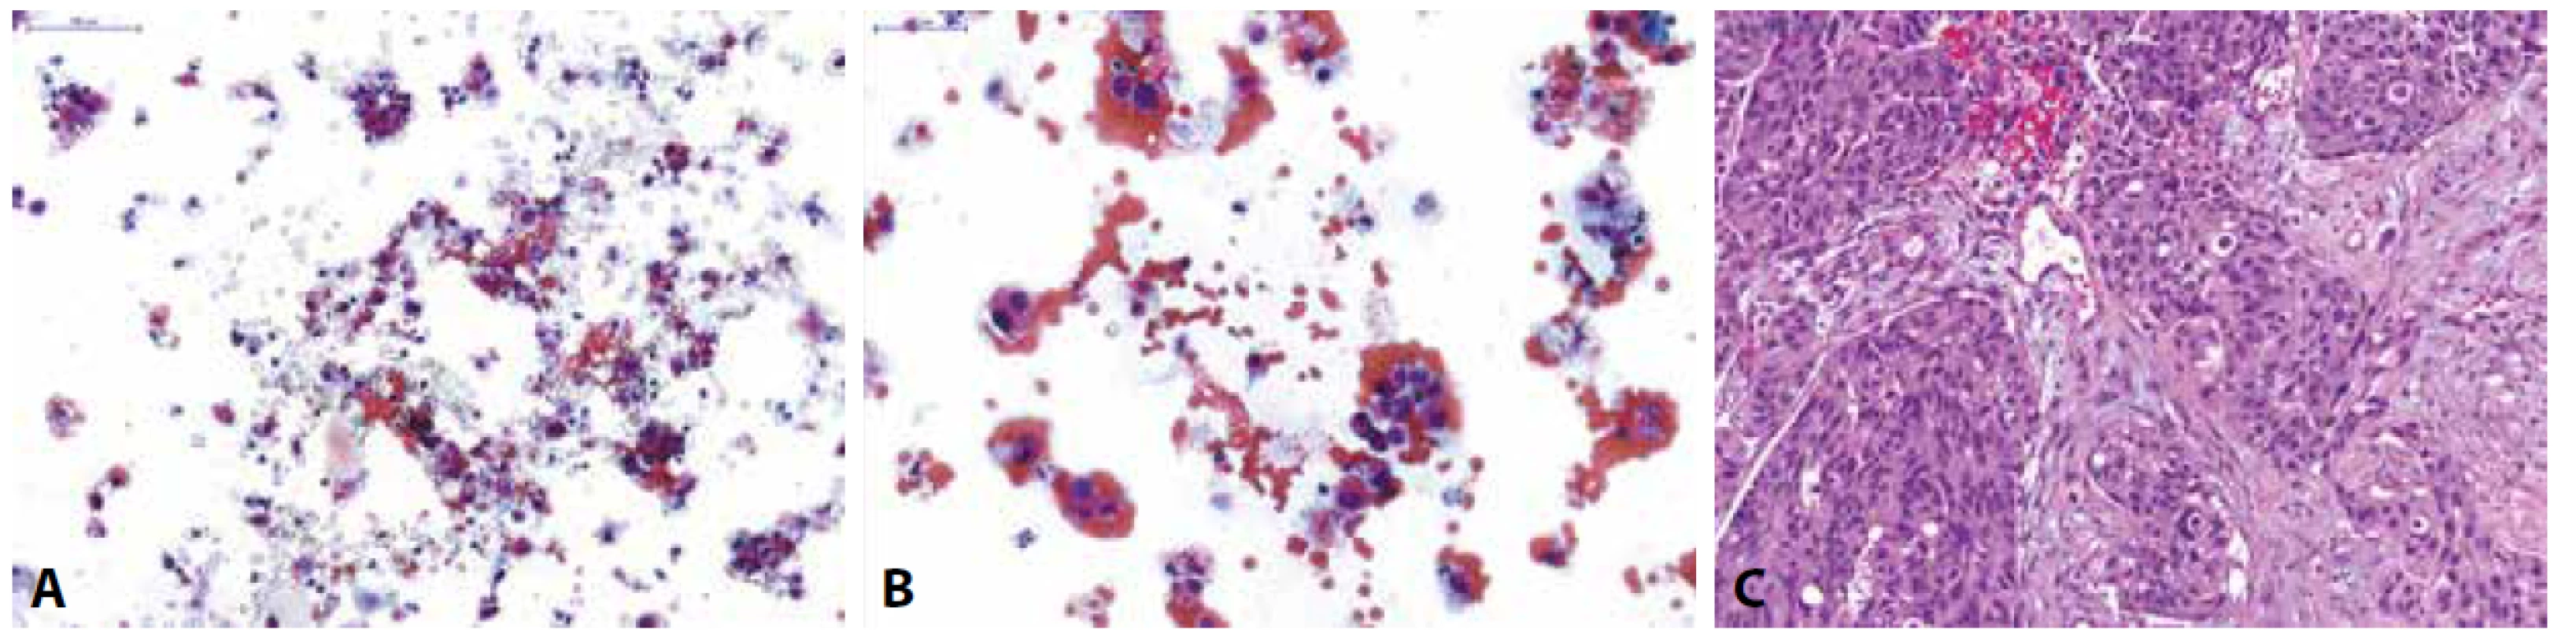 Pacient s makroskopickou hematurií při prvozáchytu tumoru močového měchýře na CT.<br>
(A,B) Spontánně vymočená moč; na krevnatém pozadí zastiženy normální urotelie z různých vrstev sliznice a atypické suspektní urotelie s posunutým nukleocytoplazmovým
poměrem ve prospěch jádra, hyperchomázií, nepravidelnostmi jaderné membrány a granulárním chromatinem; dle Pařížské klasifikace kategorie:
HGUC<br>
(C) Definitivní histologický materiál u pacienta získaný TURT s odstupem měsíce po pozitivní močové cytologii; zastižen je invazivně rostoucí špatně diferencovaný
uroteliální karcinom, dle WHO 1973 grade 3, dle WHO 2016 high-grade infiltrující uroteliální karcinom.